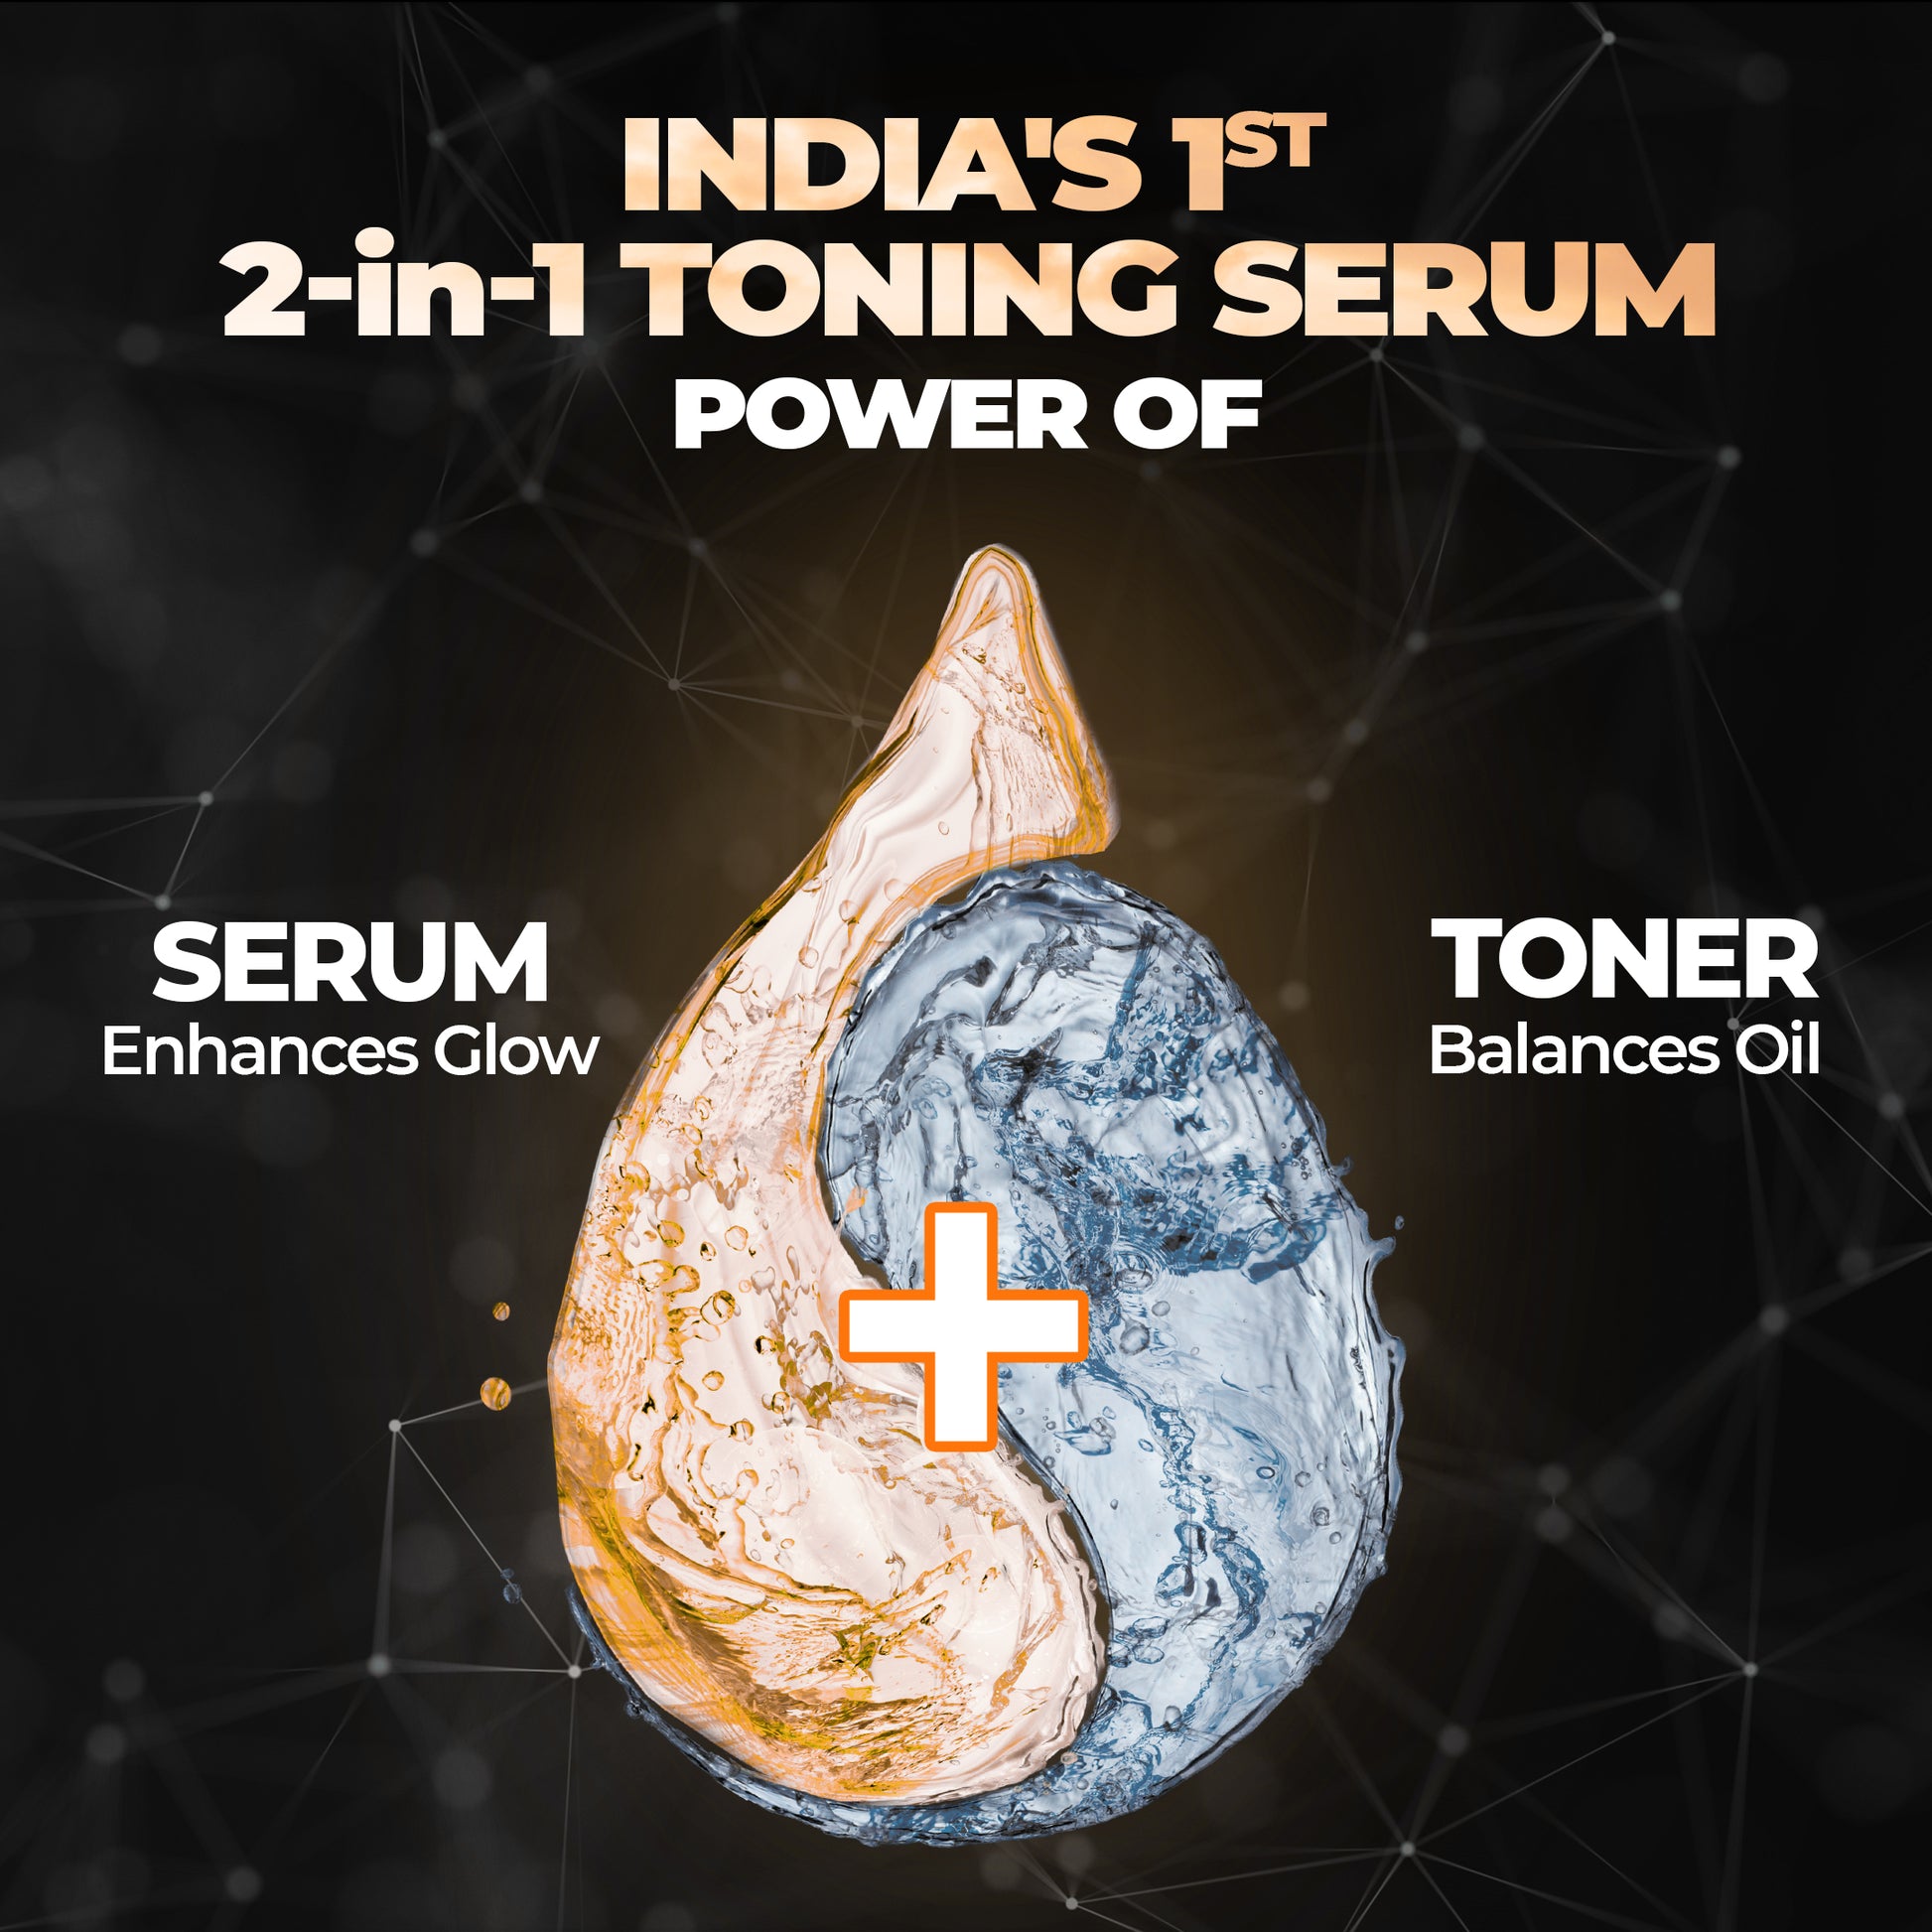 2-in-1 toning serum